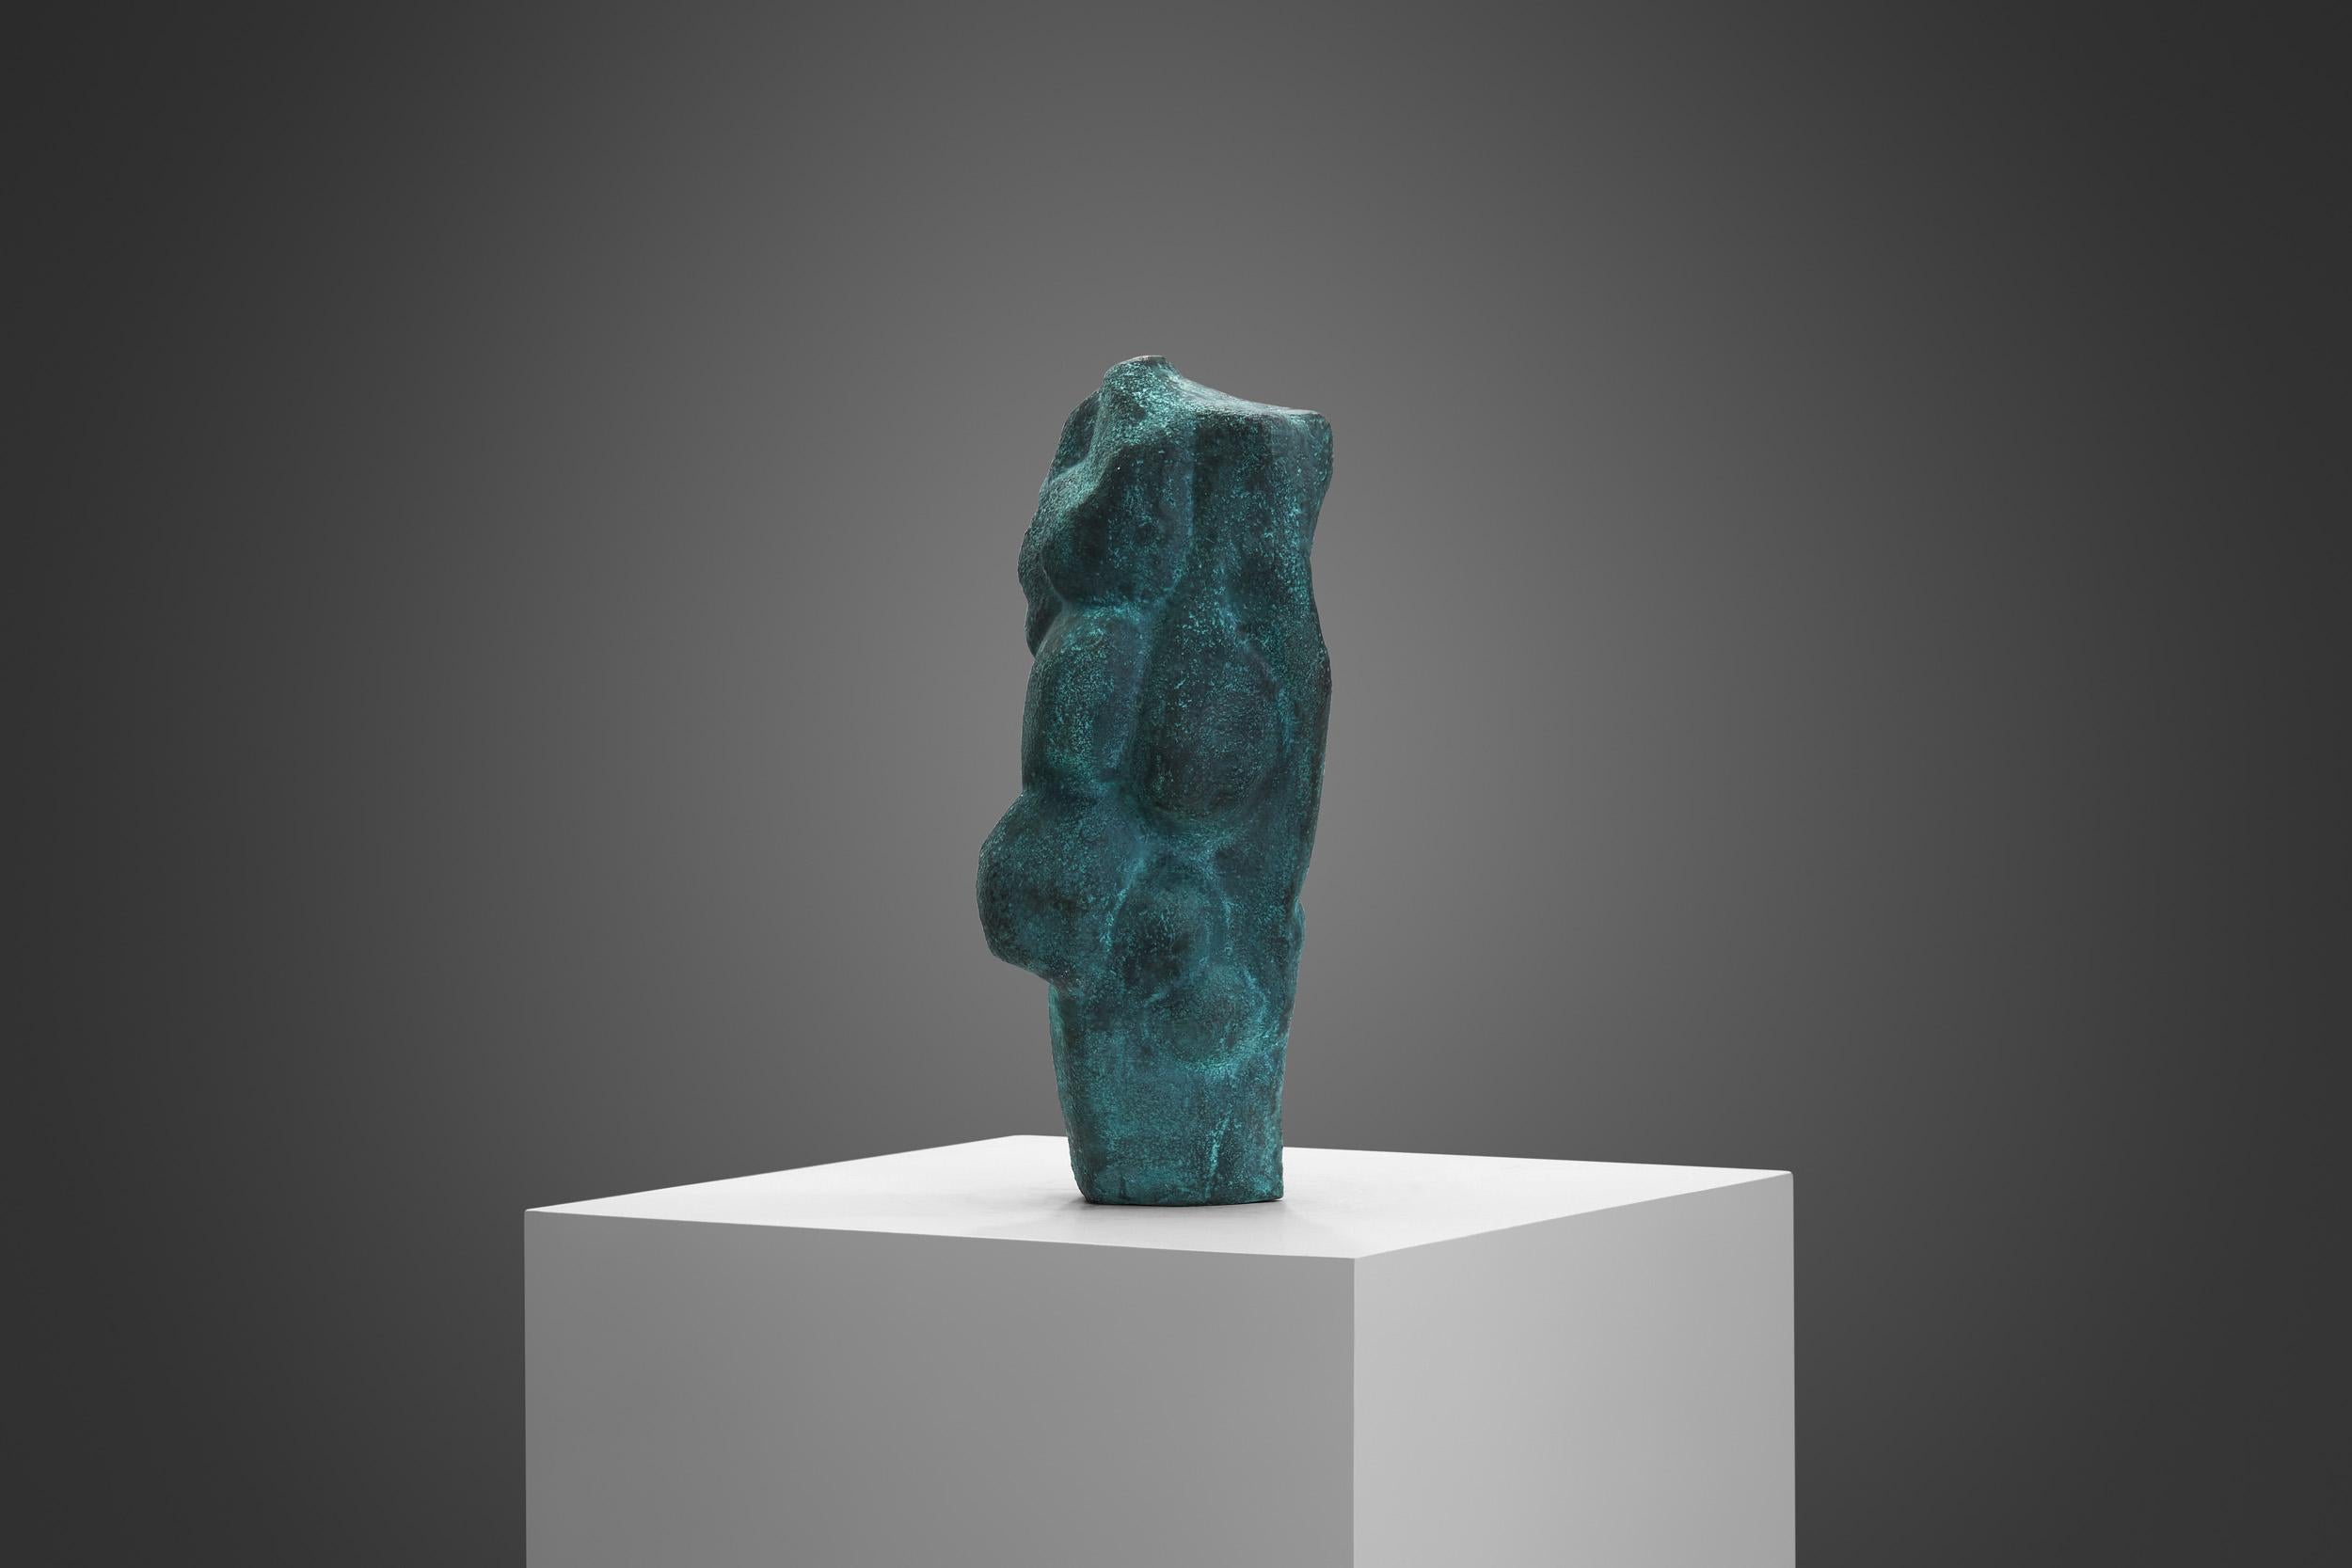 Charakteristisch für den schwedischen Künstler Björn Selder sind kraftvolle, ausdrucksstarke Skulpturen wie dieses Werk aus schweren Materialien wie Bronze, Eisen und Stein. Dieses einzigartige Werk zeigt, dass Selder sowohl als Bildhauer als auch